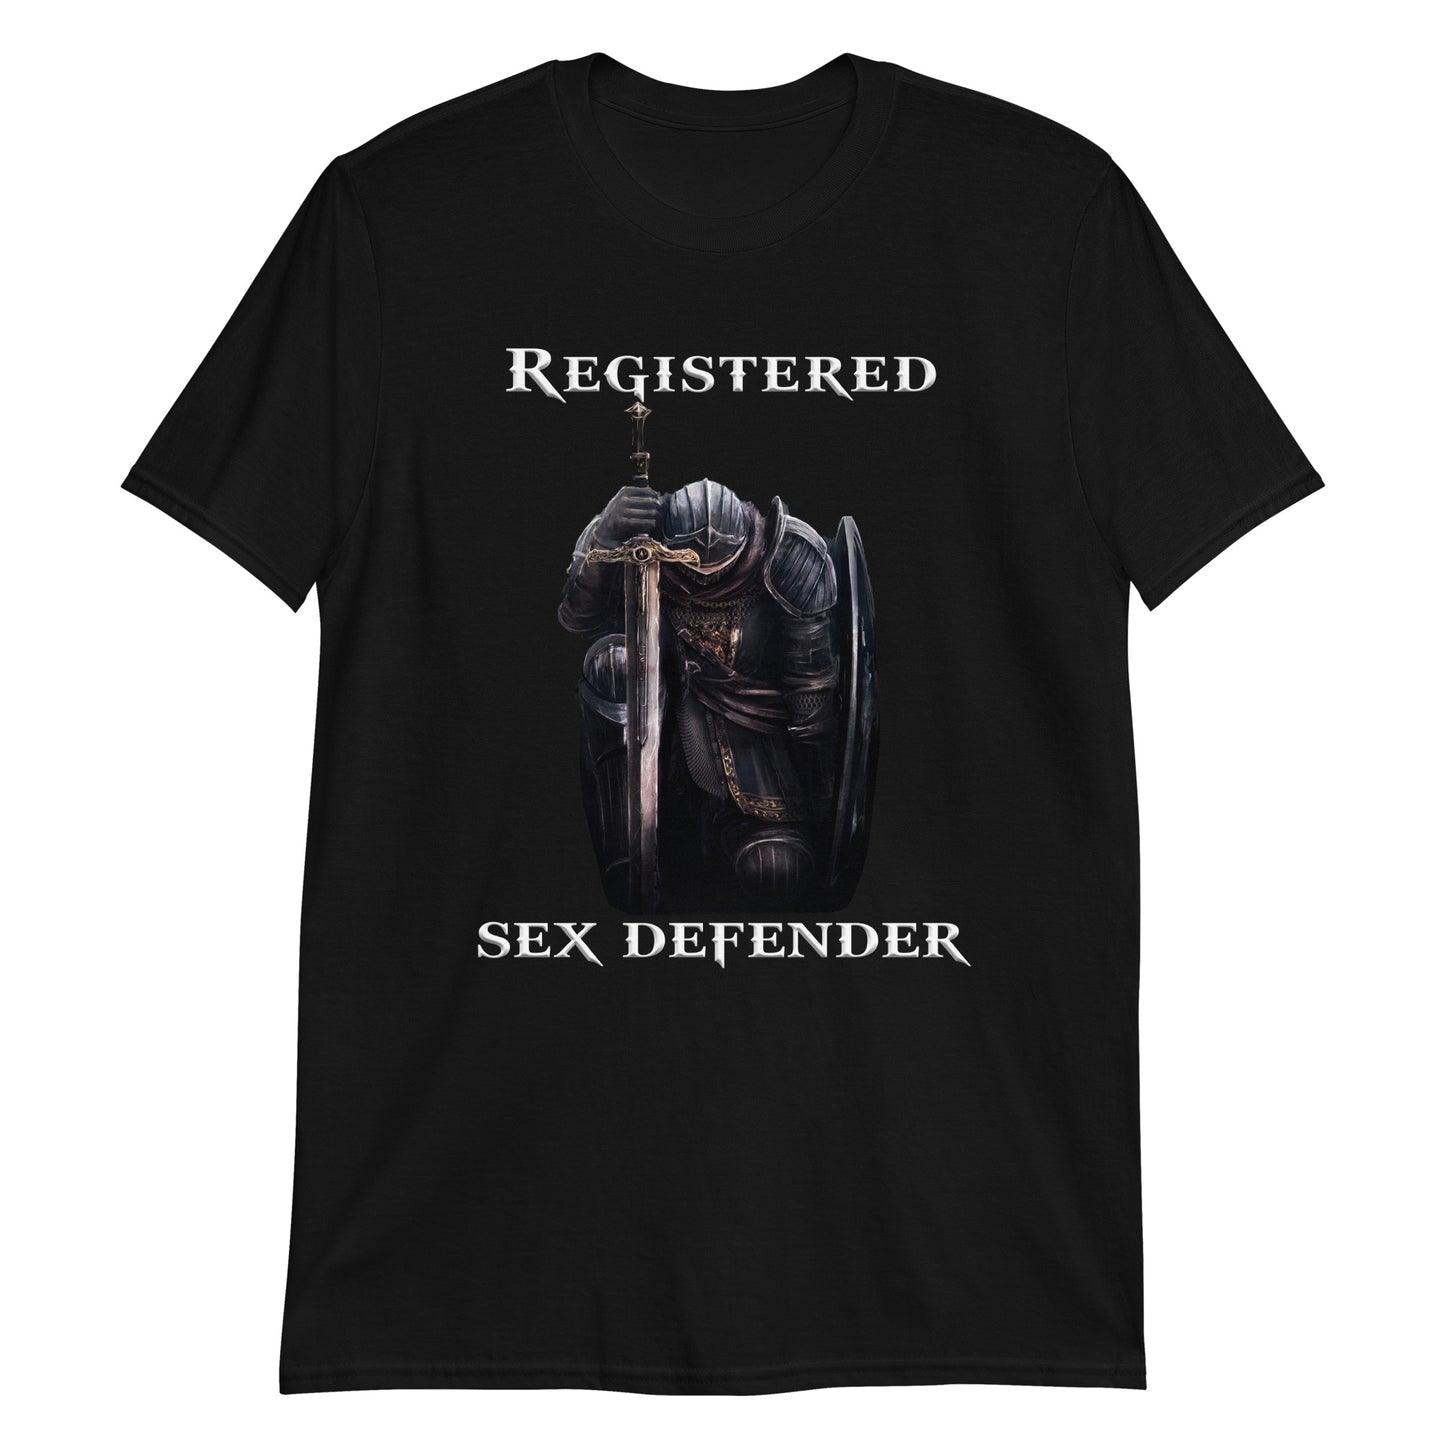 Registered Sex Defender.